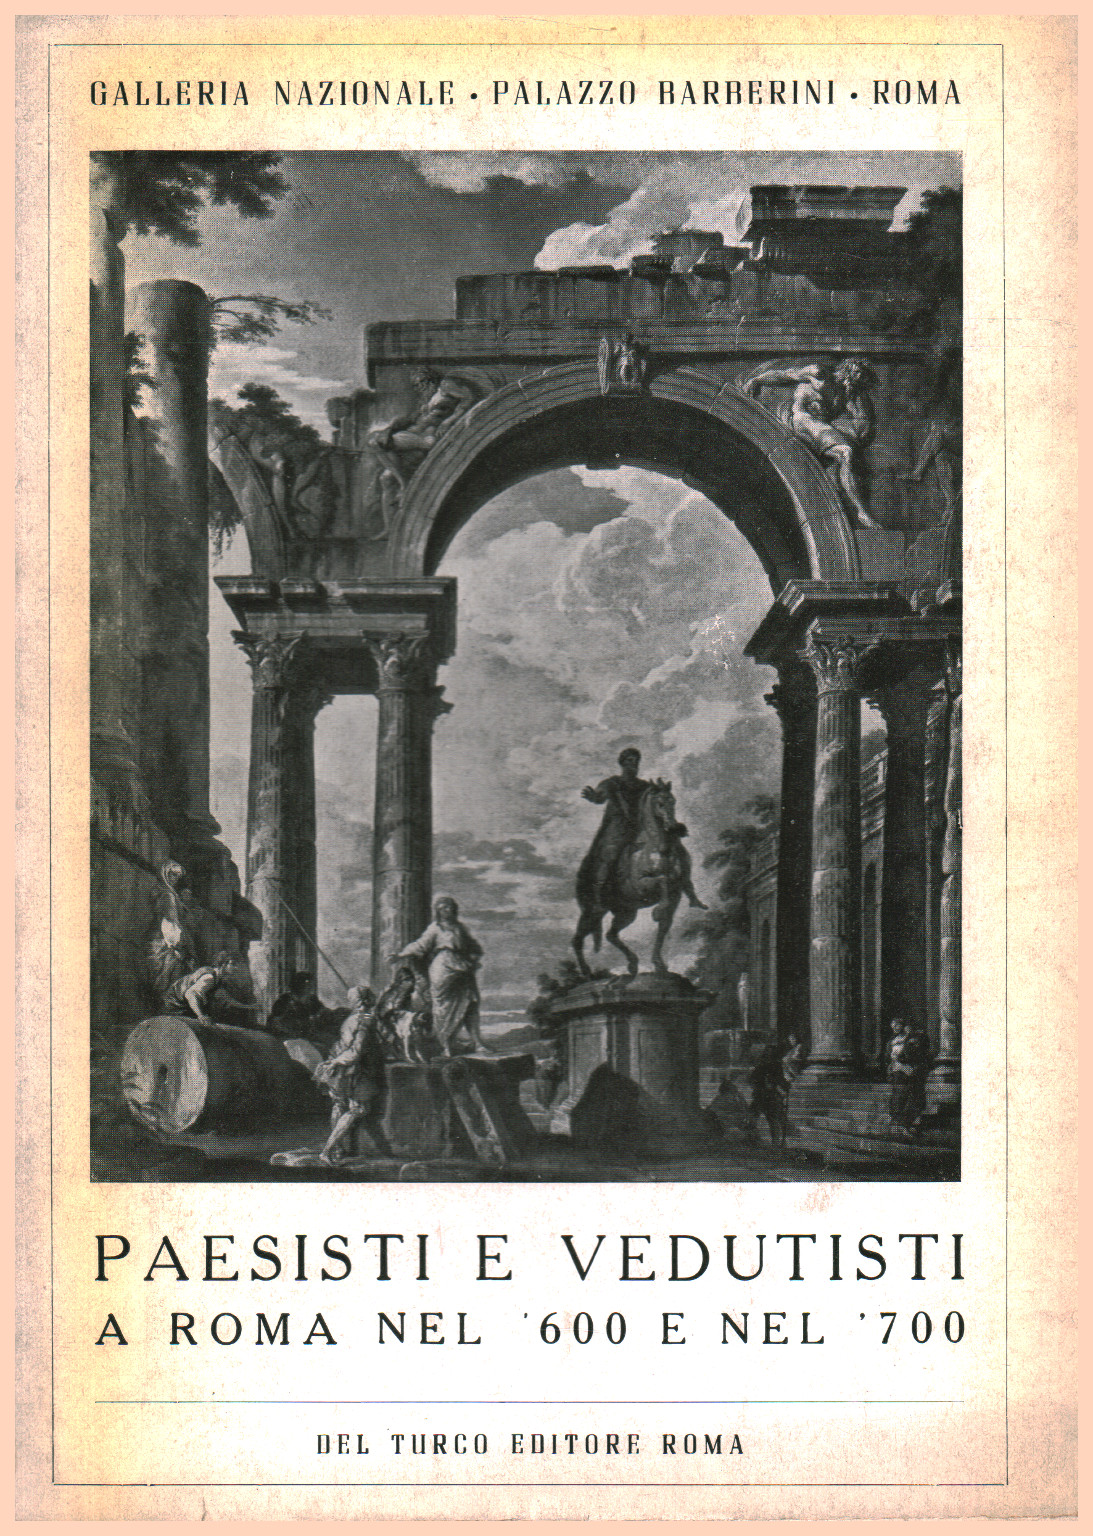 Paesisti e Vedutisti a Roma nel 600 e nel 700, s.a.